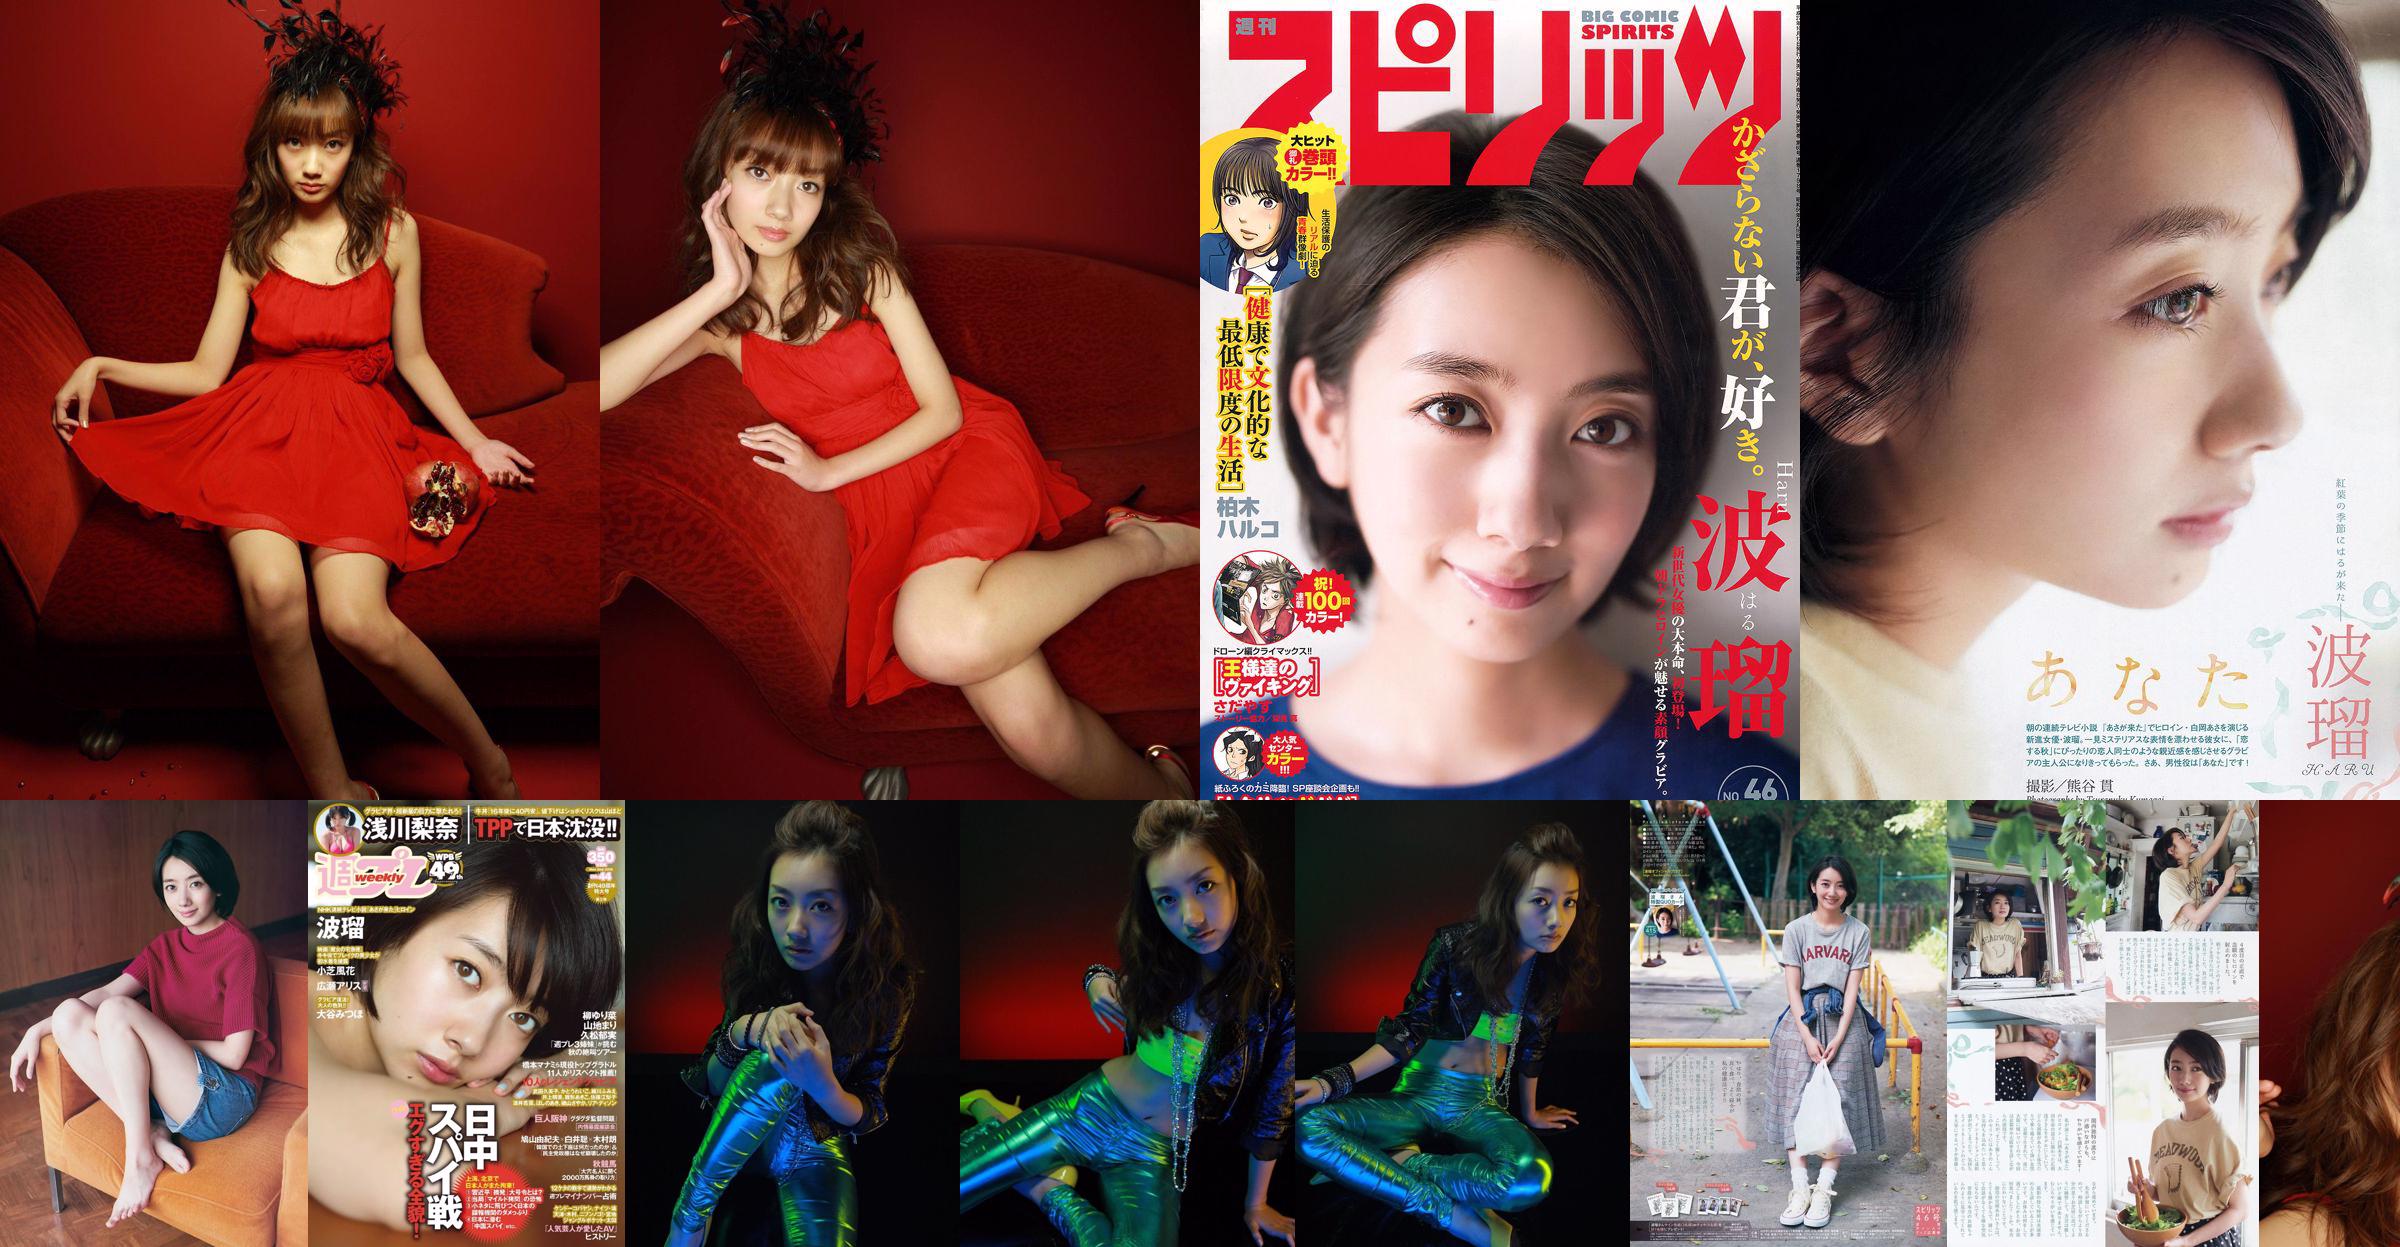 Nanboru "Super Beautiful Girl-Boru vecht voor het eerst in diepdruk" [Sabra.net] No.dc5bfa Pagina 1